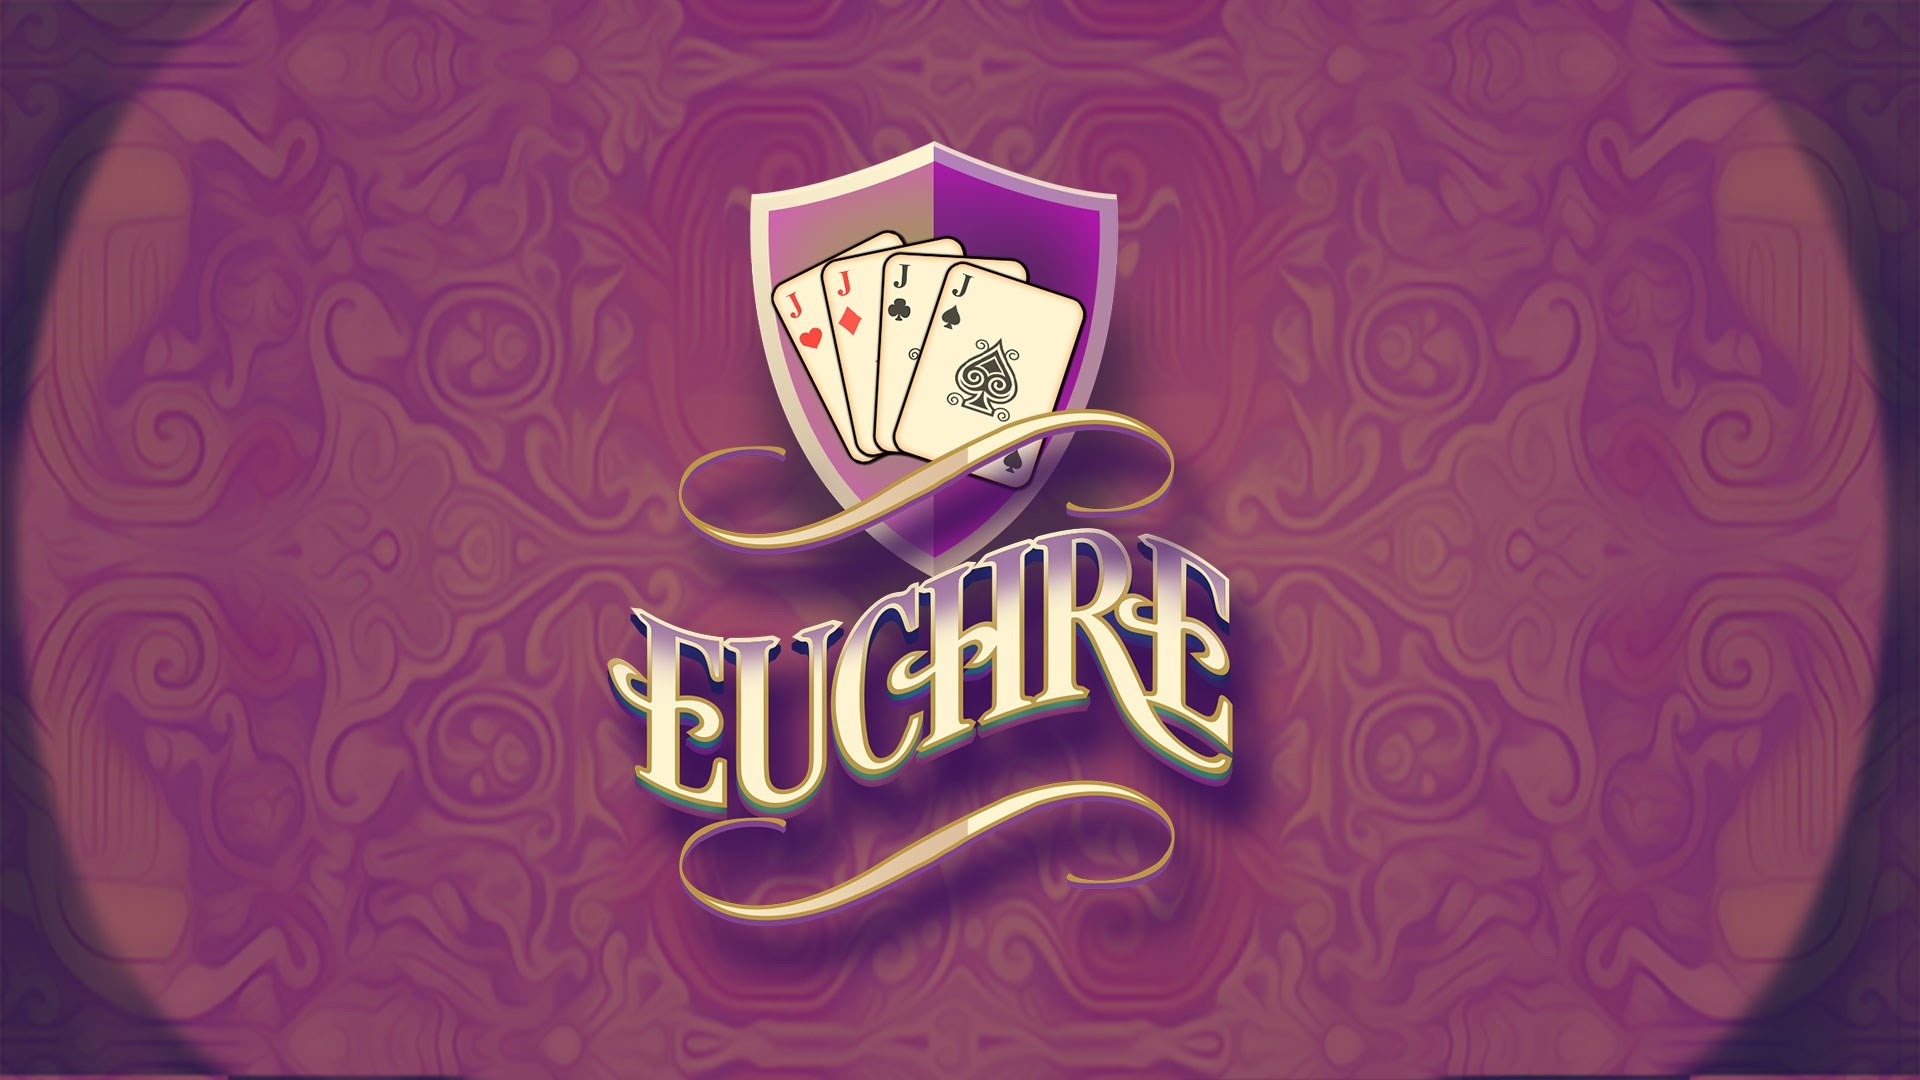 Online Euchre Tournaments & Downloadable Score Cards